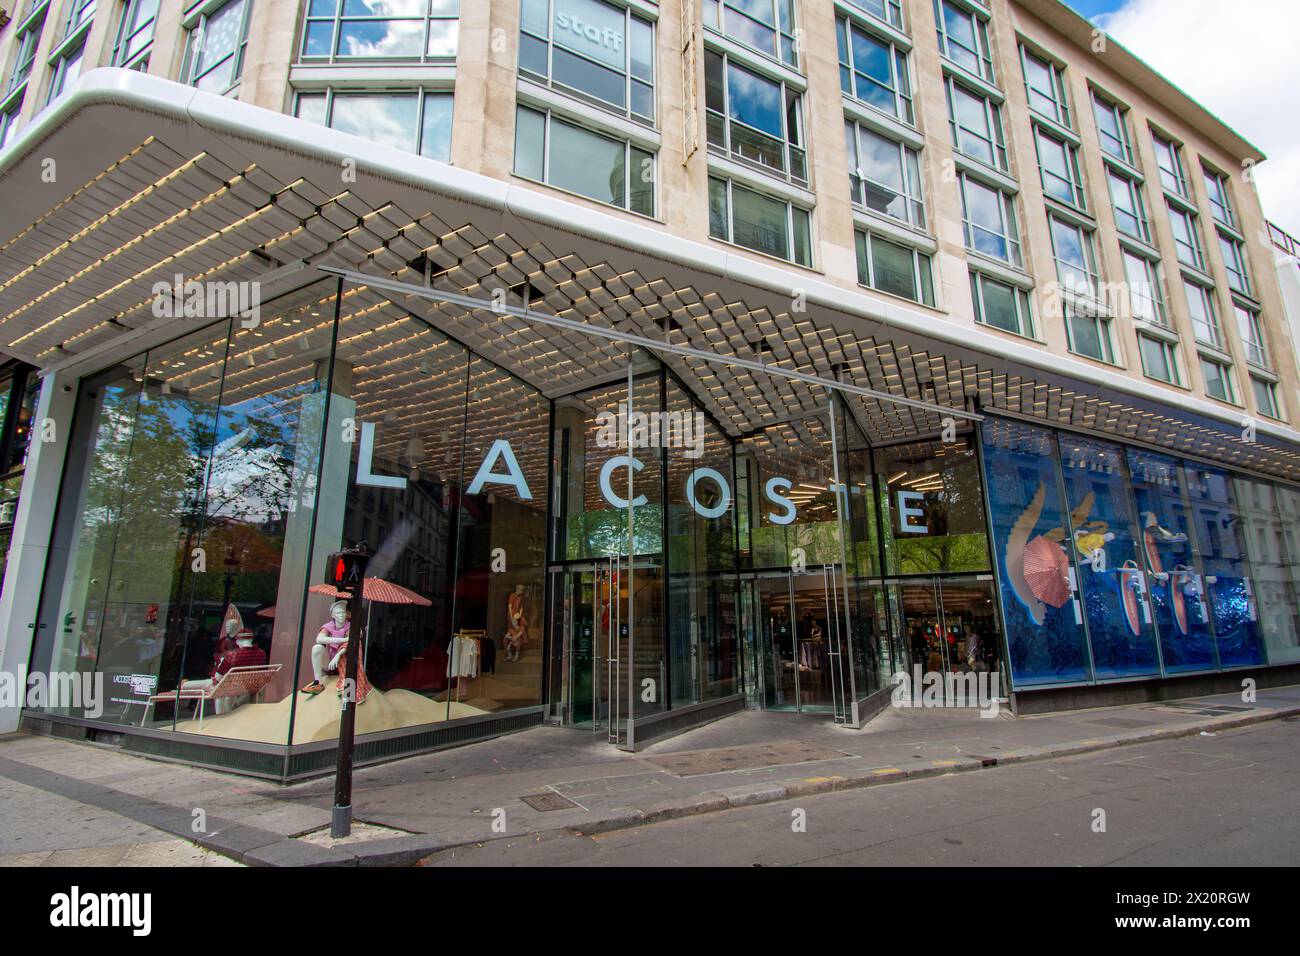 Vue extérieure du magasin phare Lacoste avenue des champs-Elysées à Paris, France. Lacoste est une entreprise française de prêt-à-porter sportive Banque D'Images